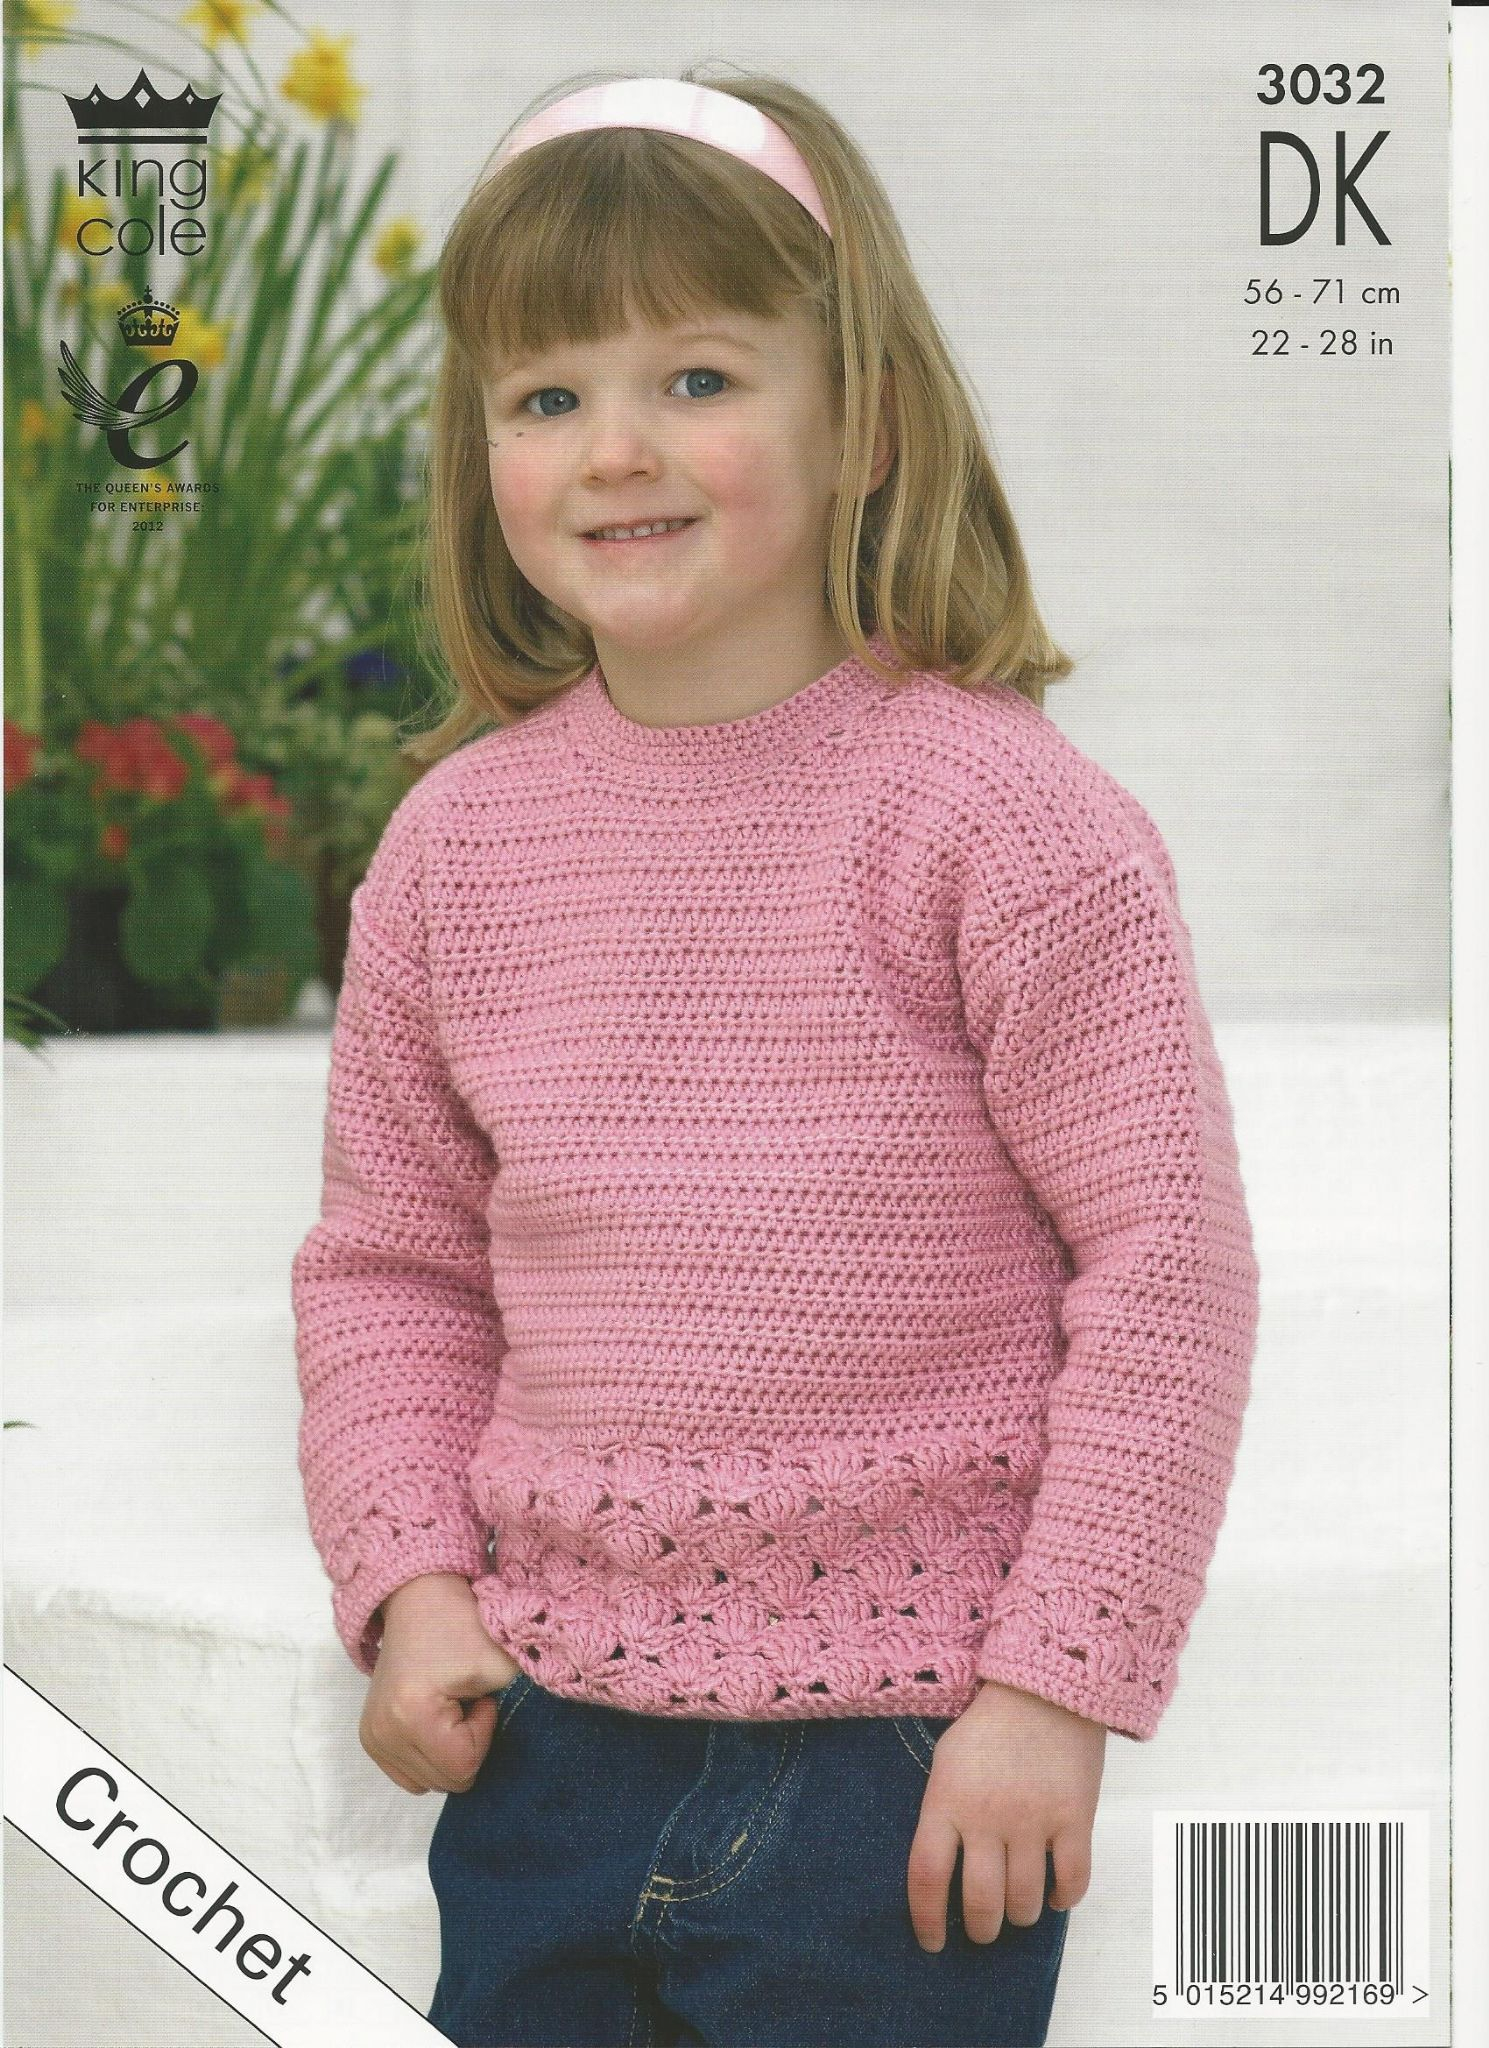 Crochet Sweater Pattern King Cole Girls Sweater And Cardigan Dk Crochet Pattern 3032